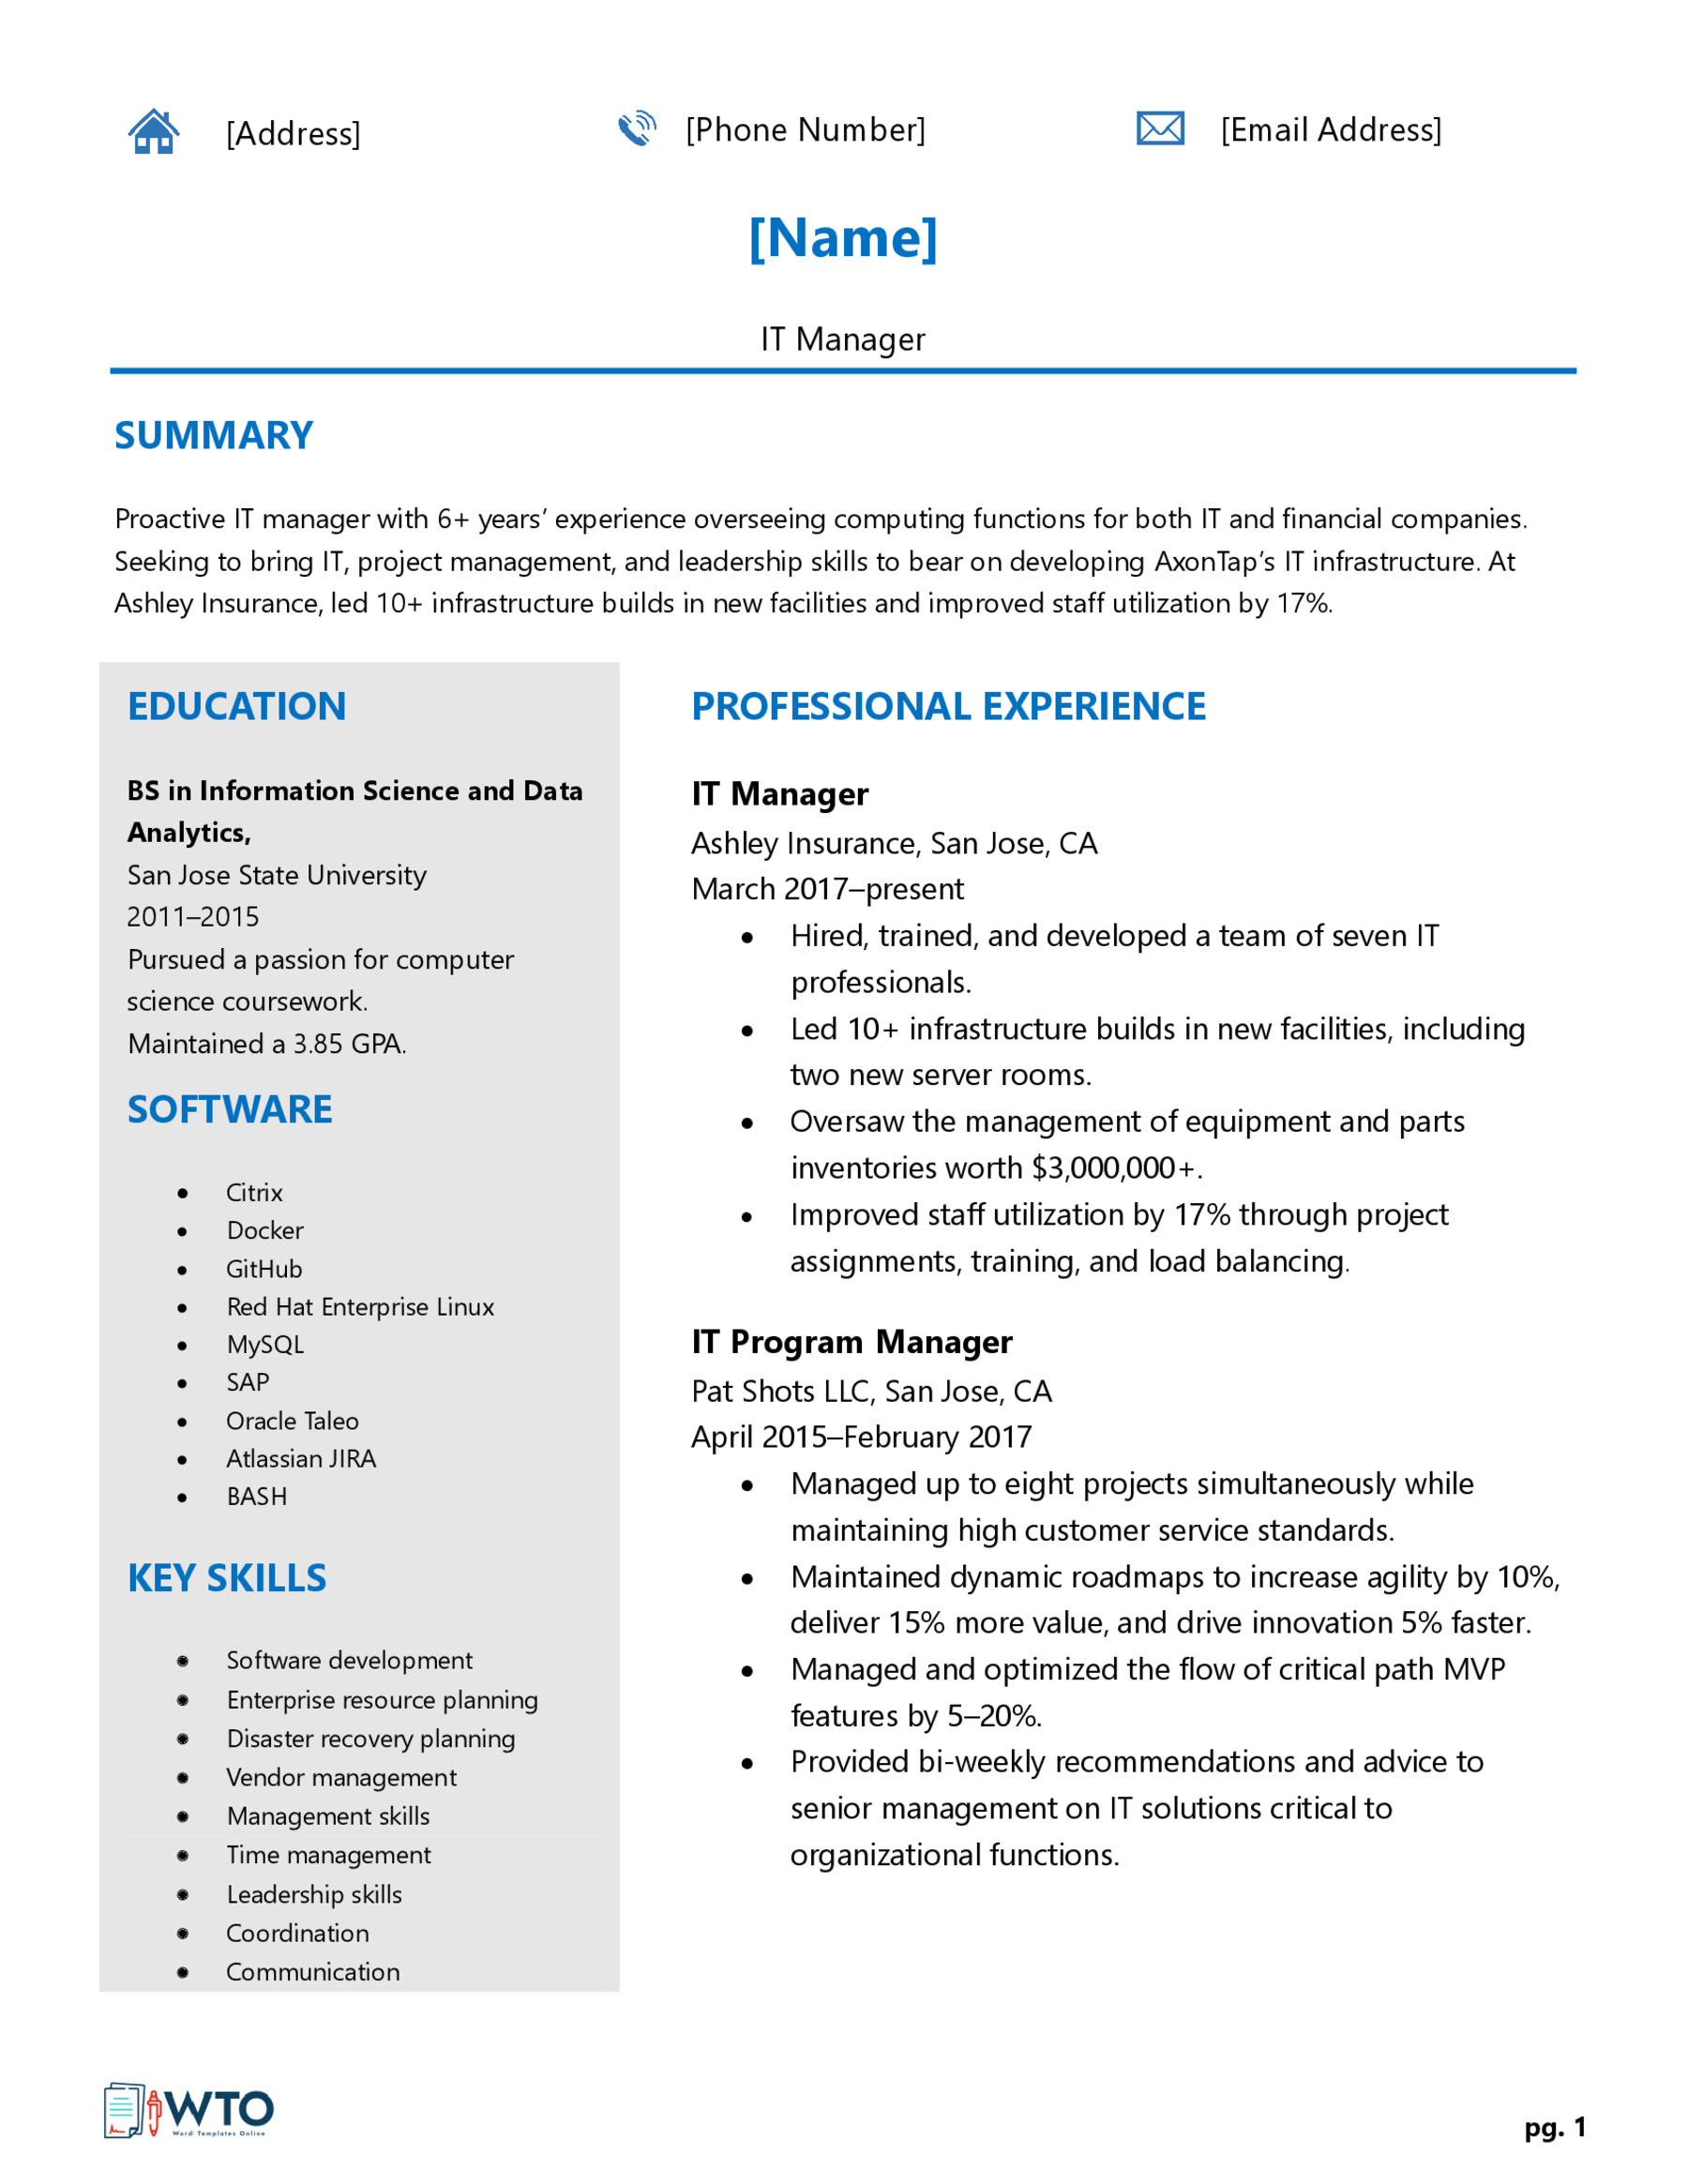 IT Manager CV Format - Comprehensive Sample